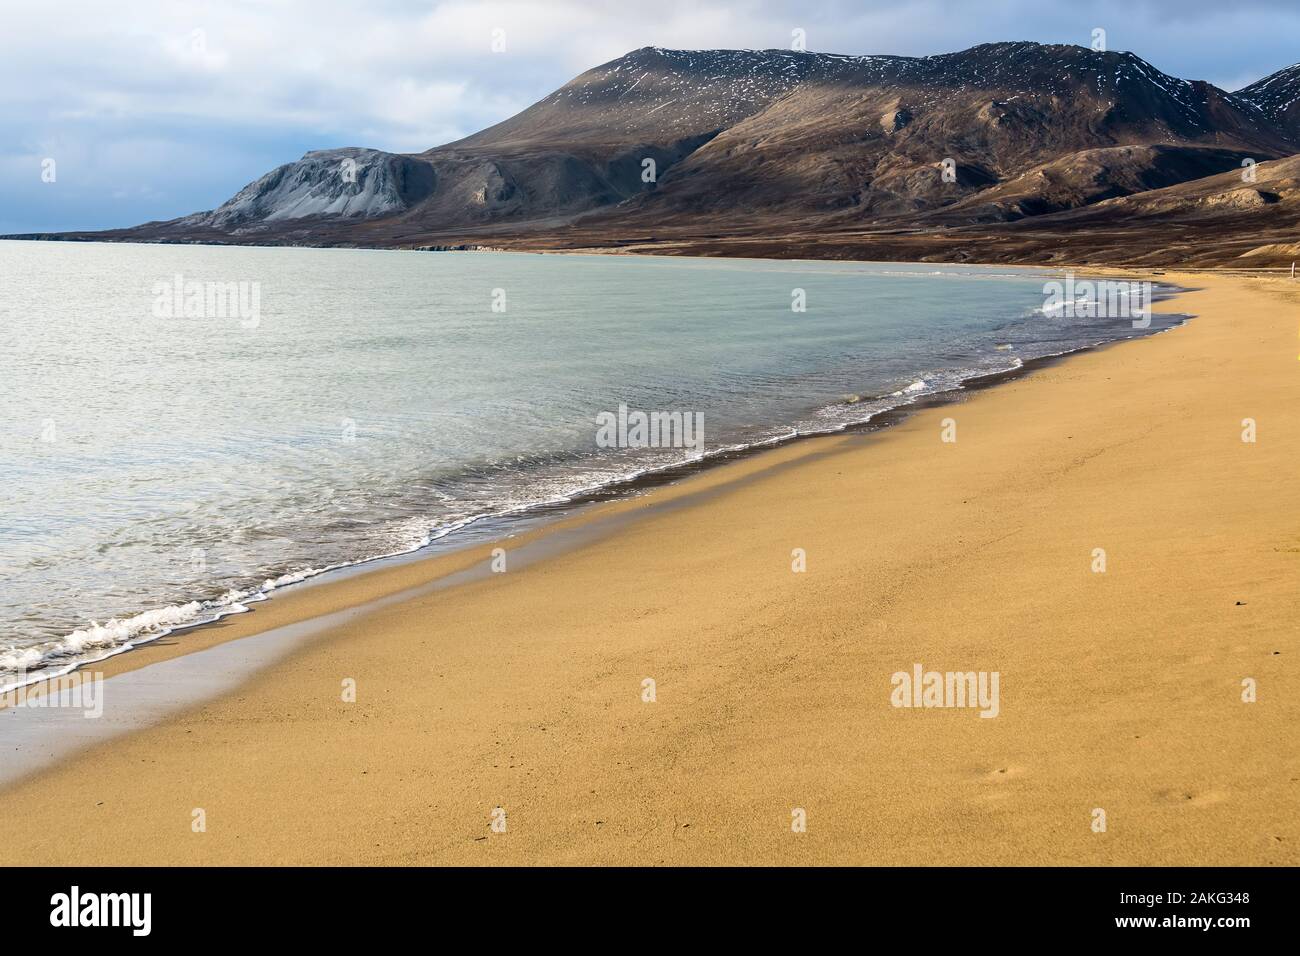 spiaggia di sabbia dorata con picchi oceanici e catena montuosa rocciosa all'orizzonte - splendido paesaggio artico Foto Stock